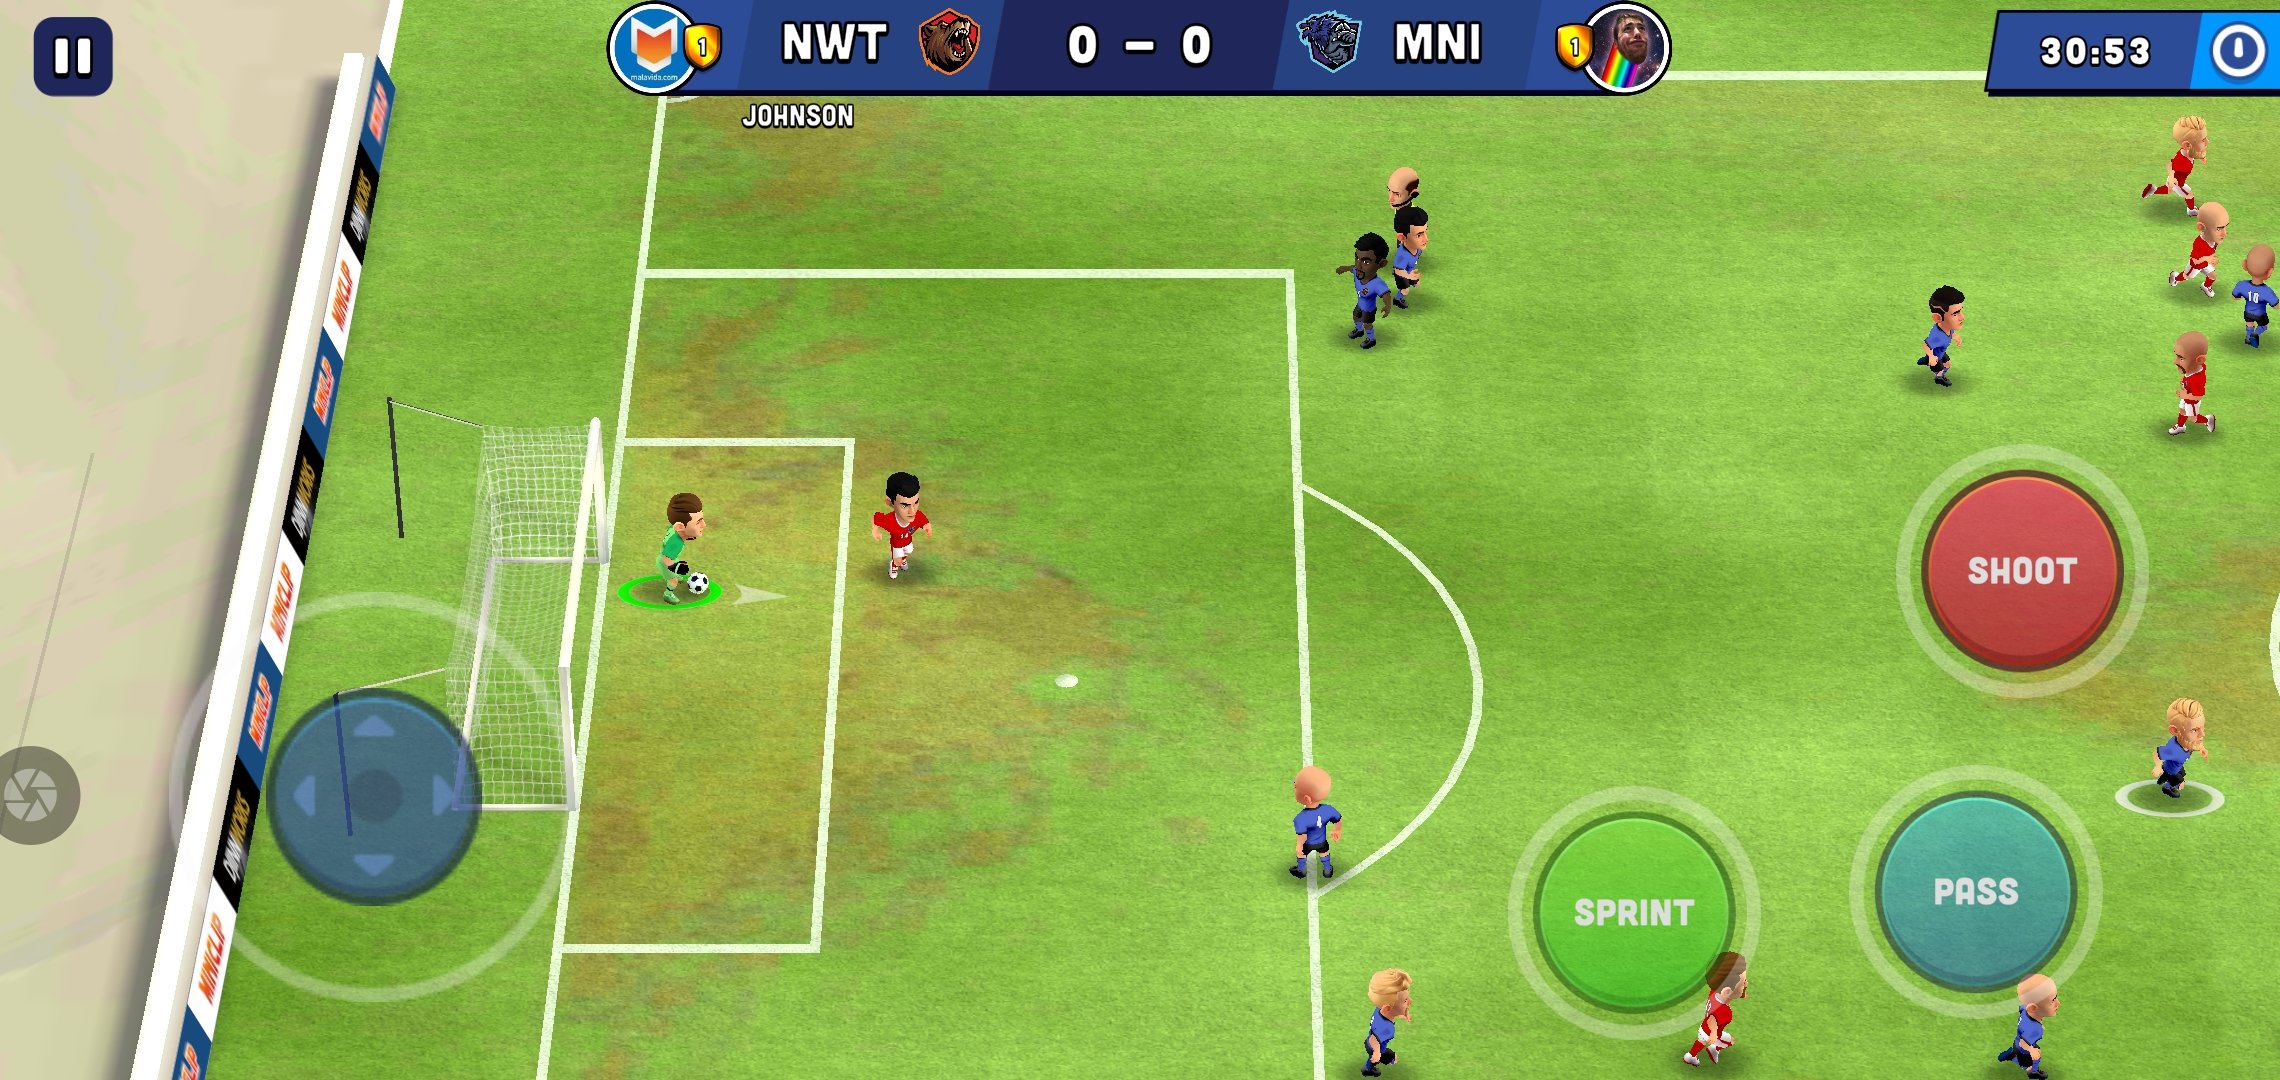 Jogo de futebol Mini FIFA no Linux - Veja como instalar via AppImage